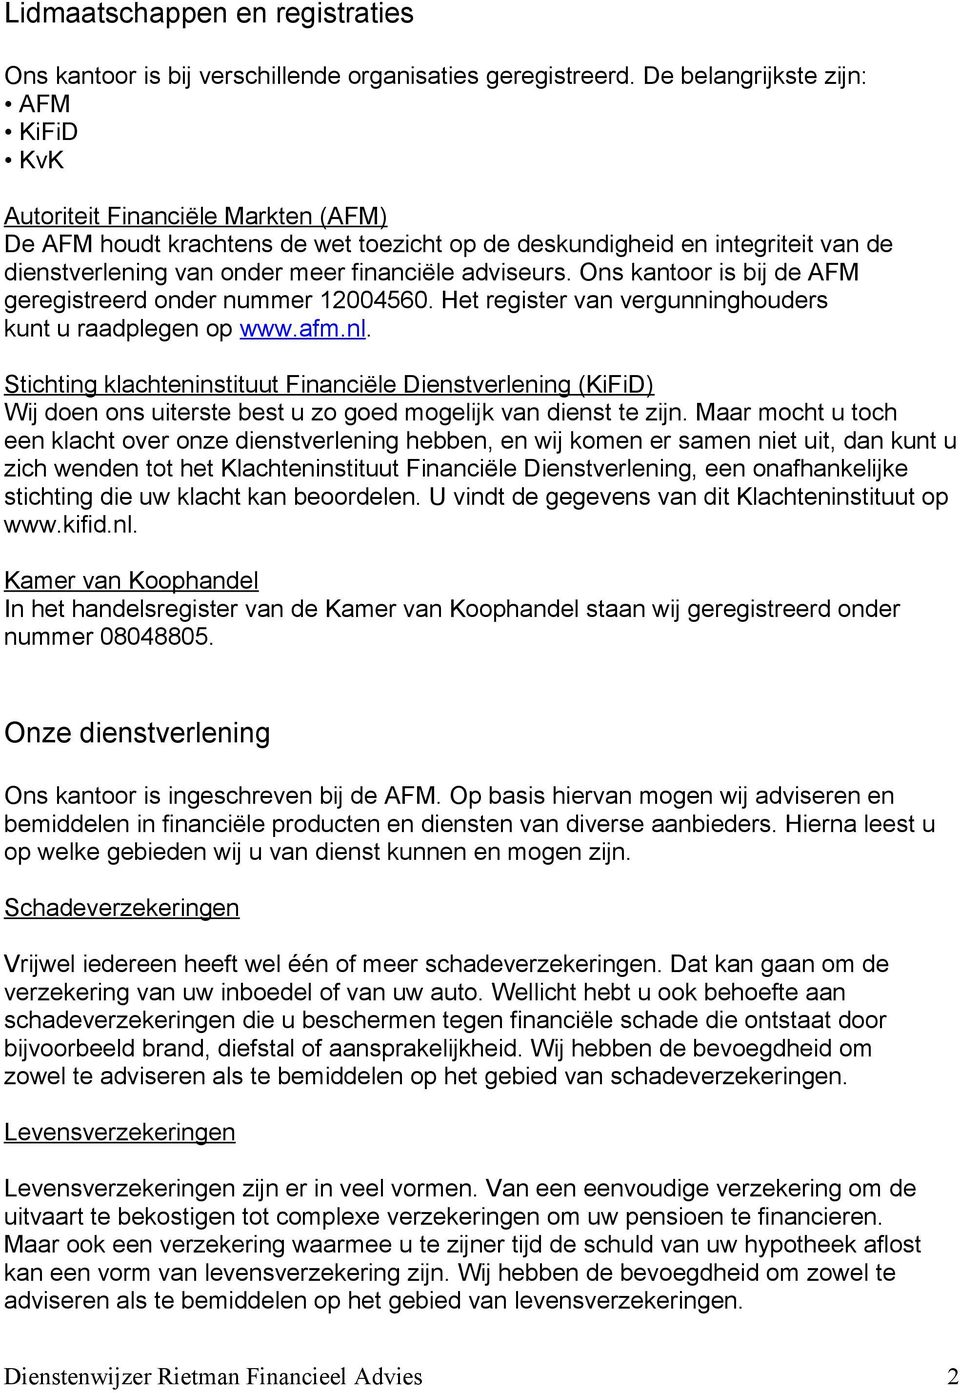 adviseurs. Ons kantoor is bij de AFM geregistreerd onder nummer 12004560. Het register van vergunninghouders kunt u raadplegen op www.afm.nl.